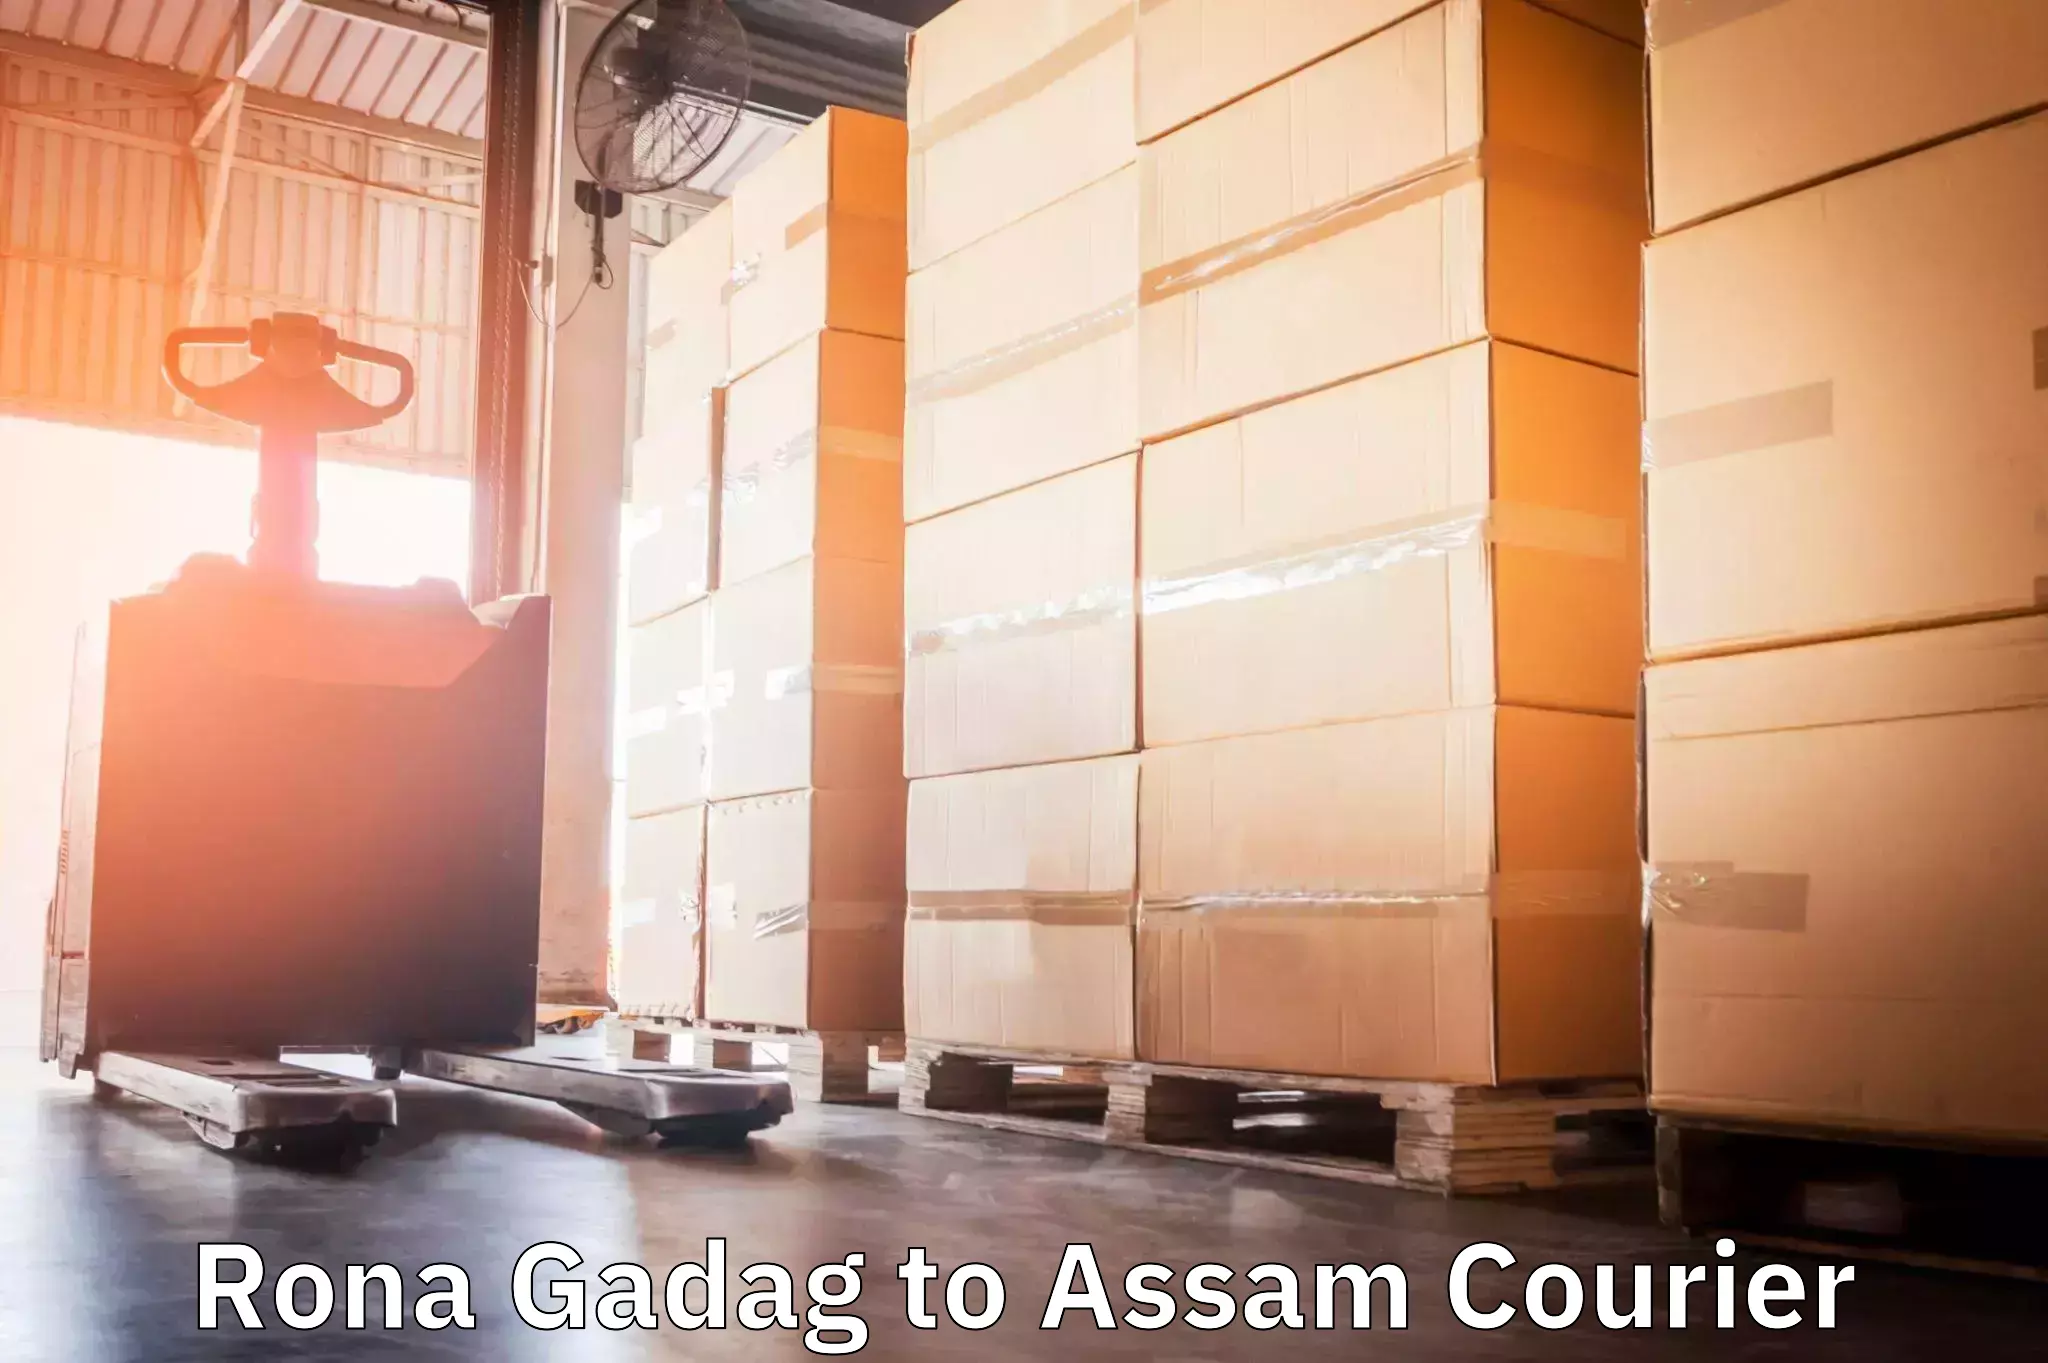 Courier service comparison Rona Gadag to Assam University Silchar